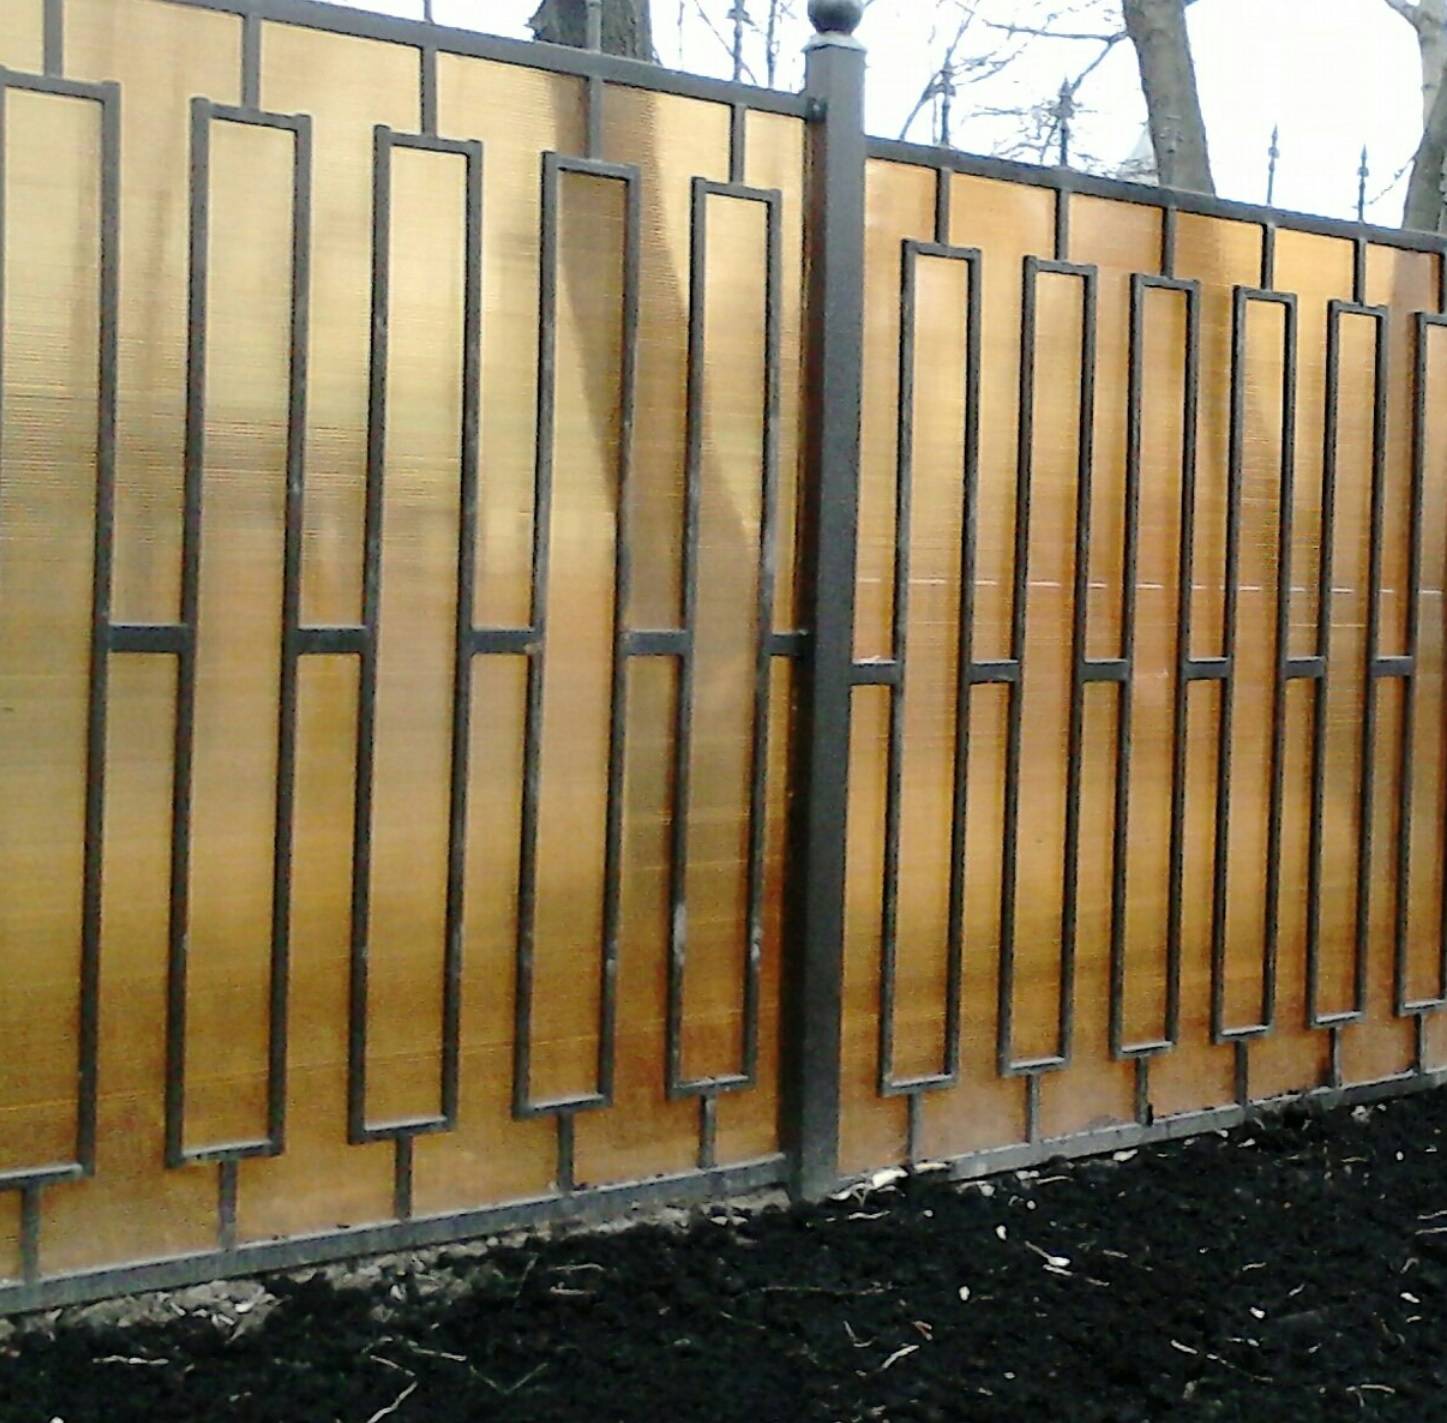 Забор из поликарбоната своими руками: пошаговые инструкции и фото к ним